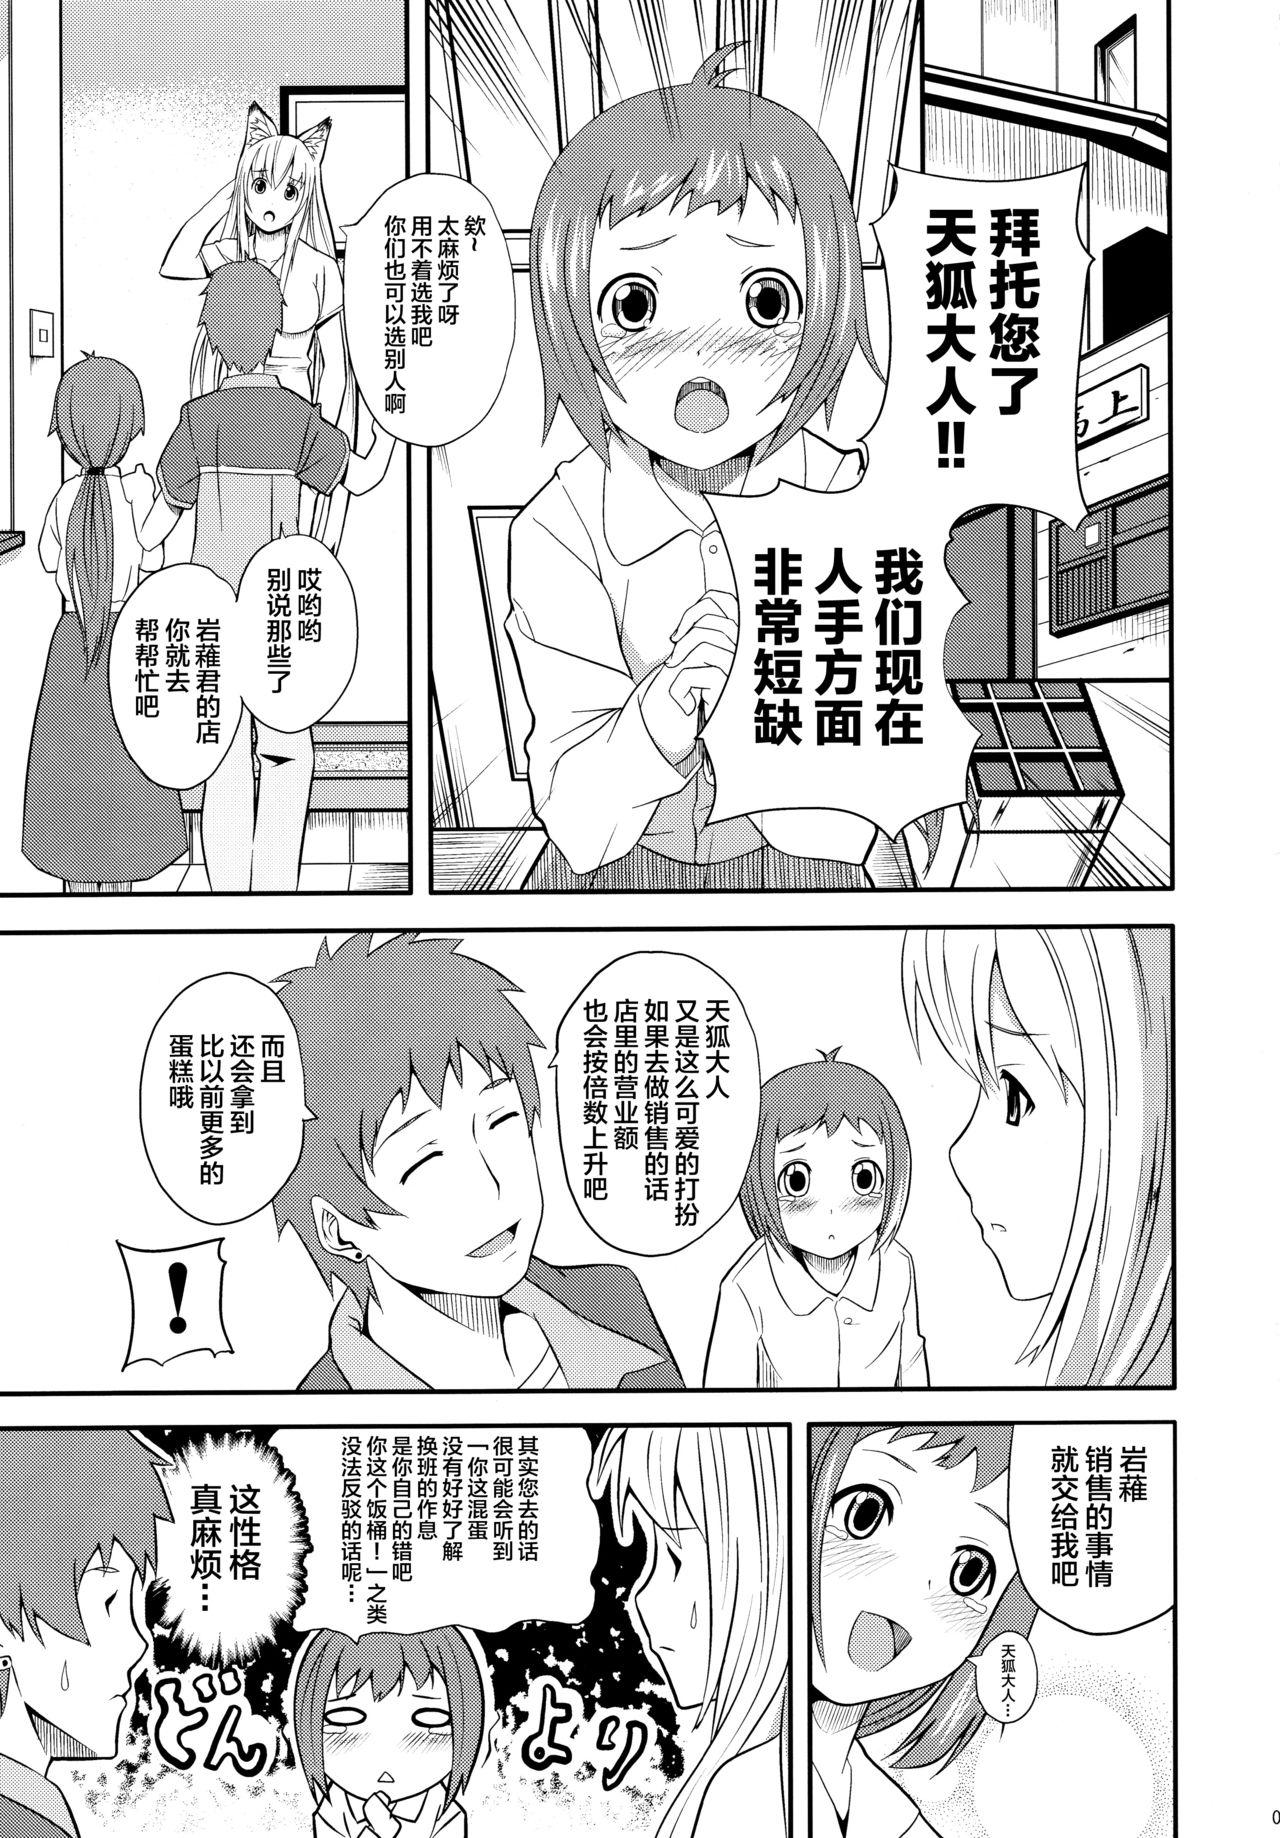 Leather Hare, Tokidoki Oinari-sama 4 - Wagaya no oinari sama Milfsex - Page 5